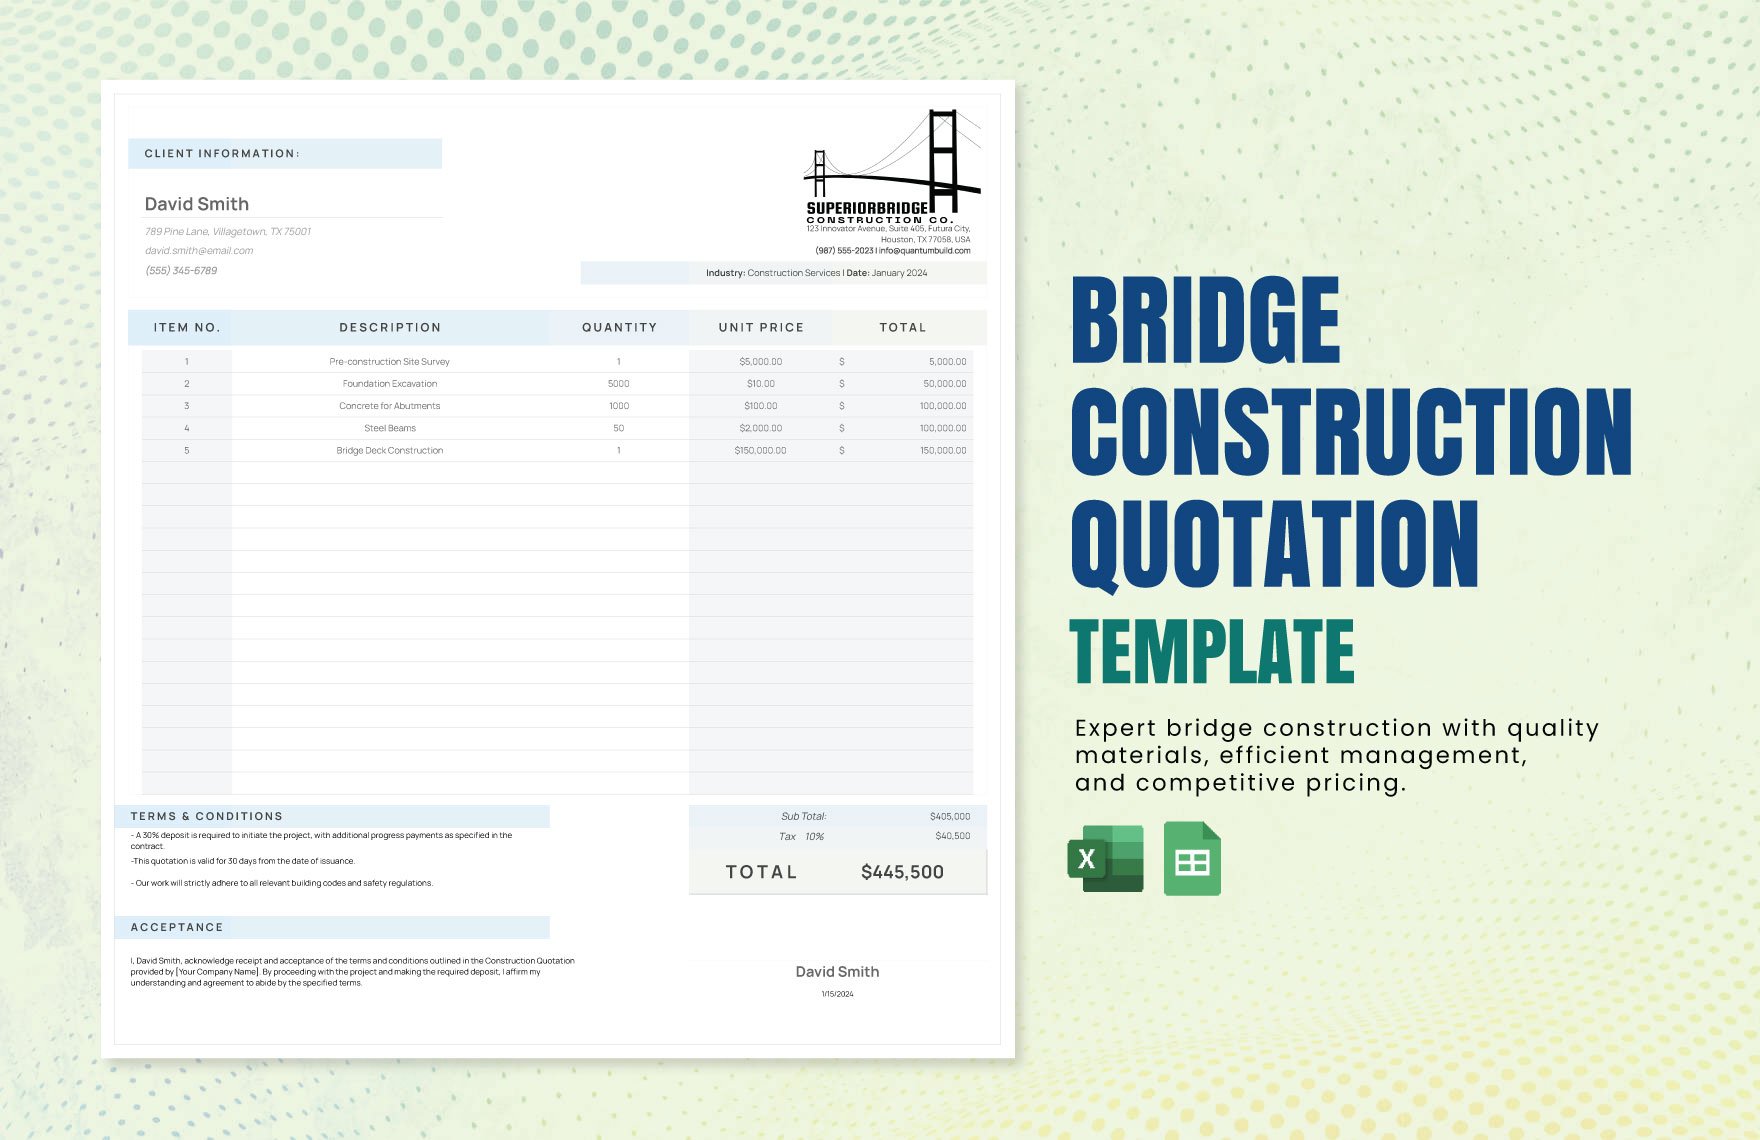 Bridge Construction Quotation Template